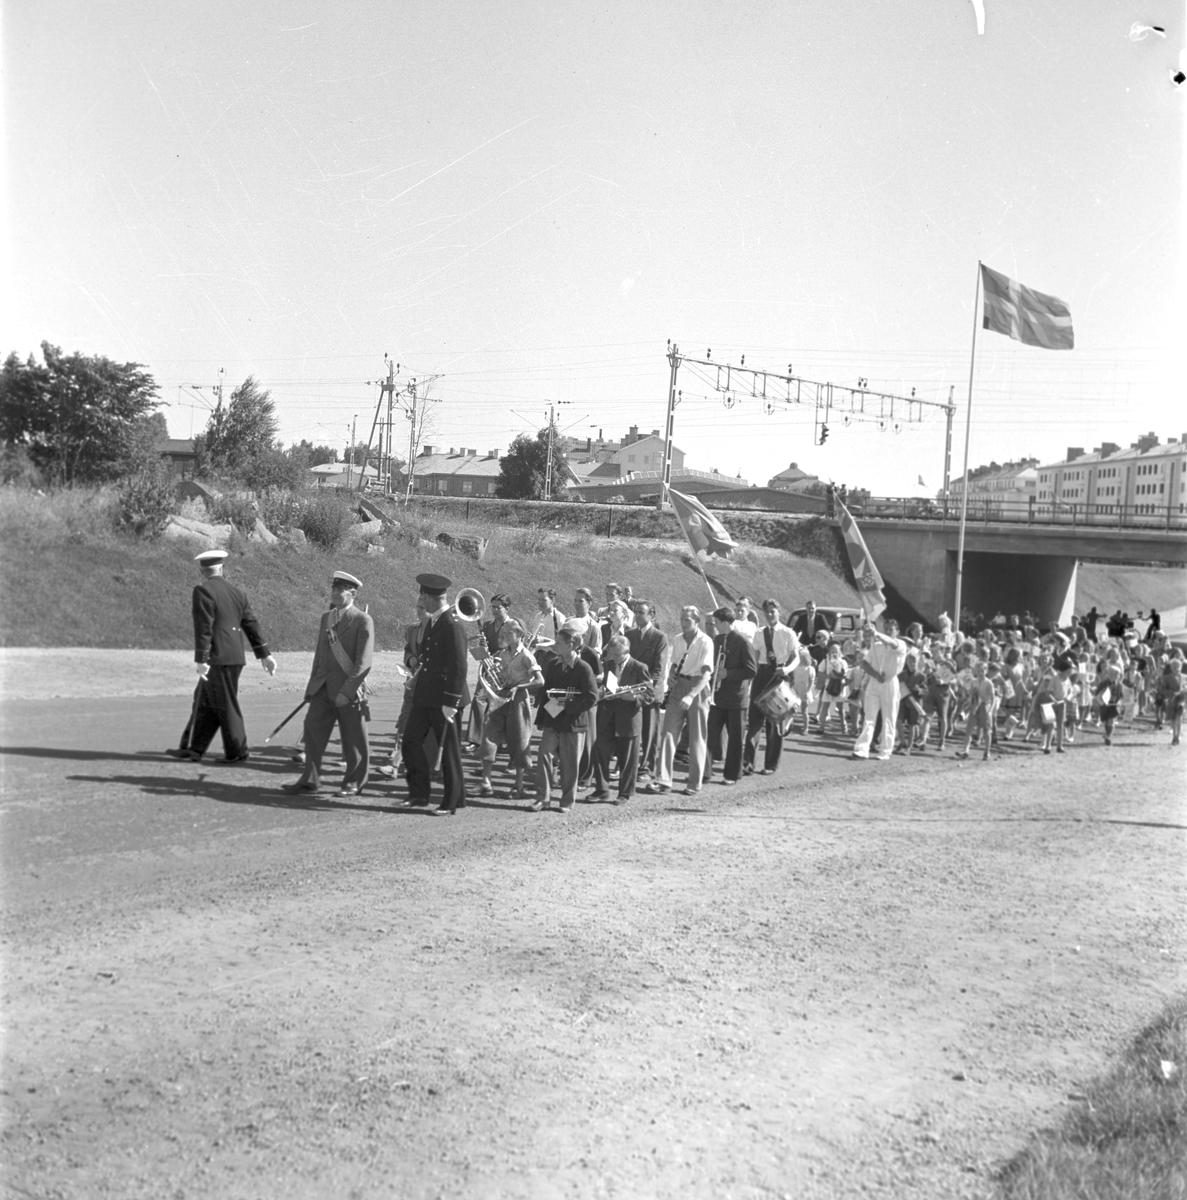 Gävleutställningen 1946
arrangerades 21 juni - 4 augusti. En utställning med anledning av Gävle stads 500-årsjubileum. På 350.000 kv.m. visade 530 utställare sina produkter. Utställningen besöktes av ca 760.000 personer.

Demonstration

